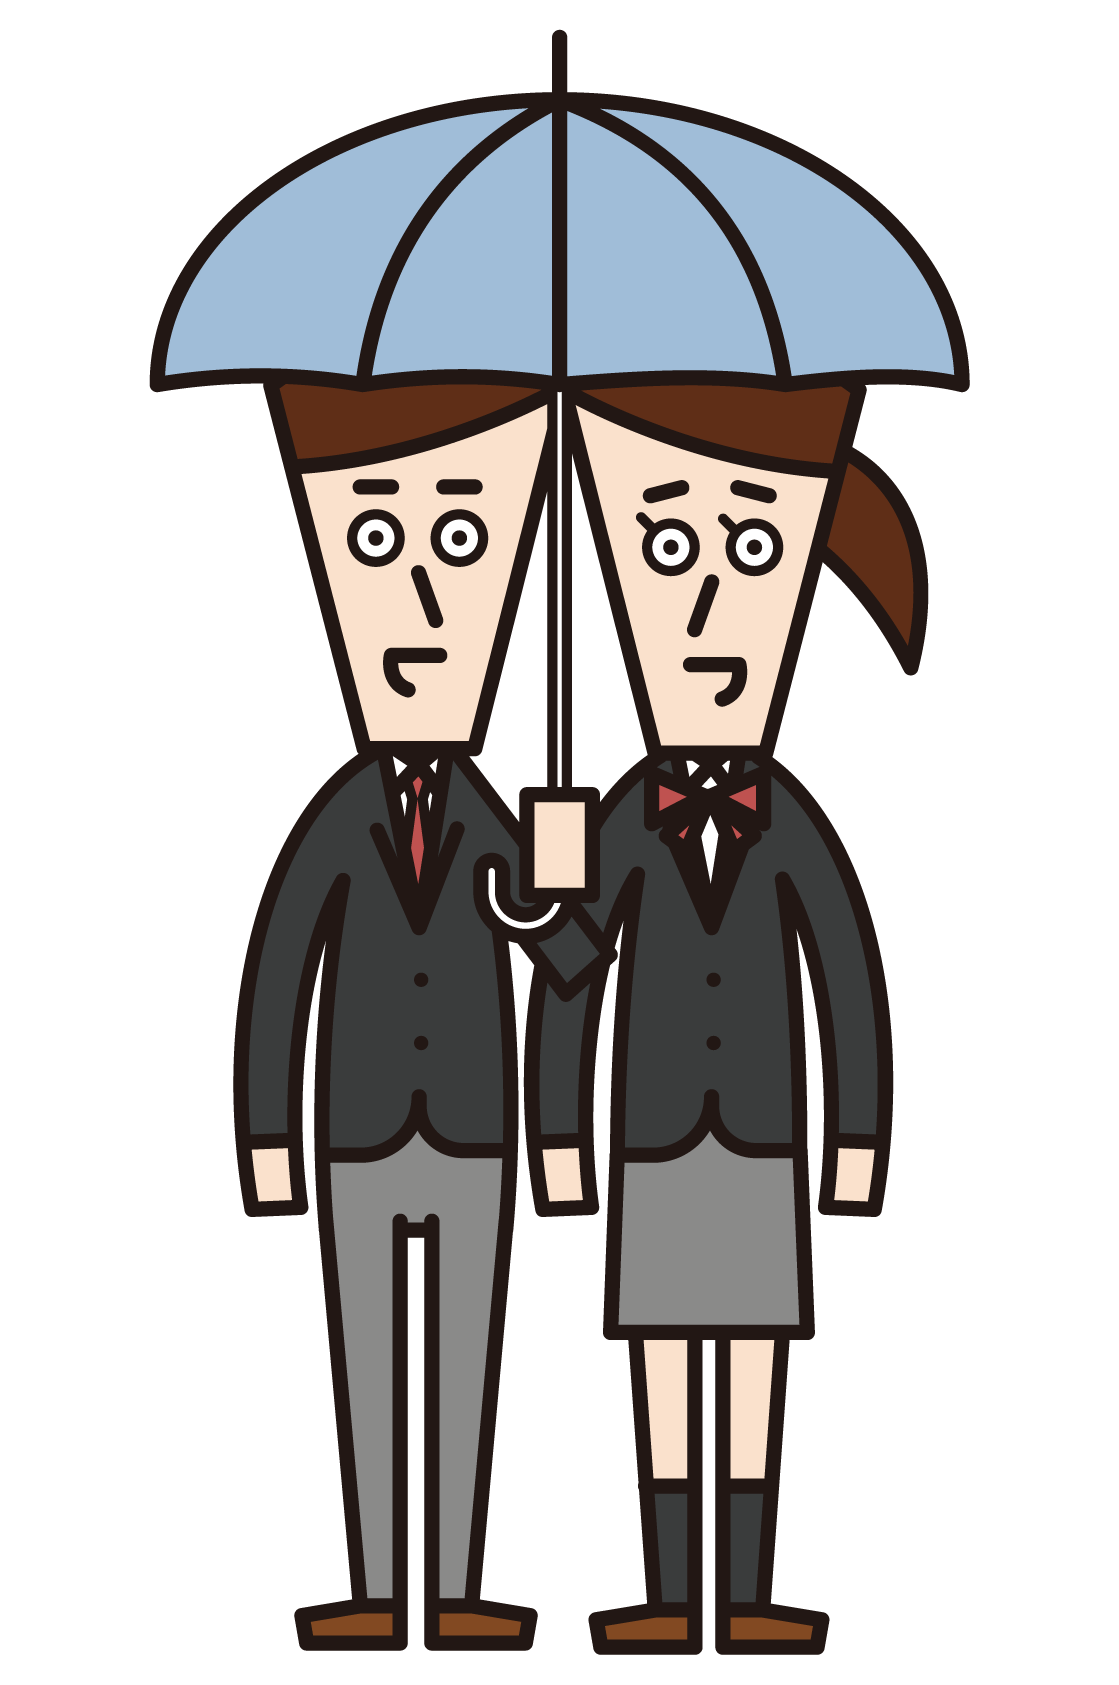 조인트 우산을 착용한 부부(제복을 입은 사람)의 일러스트